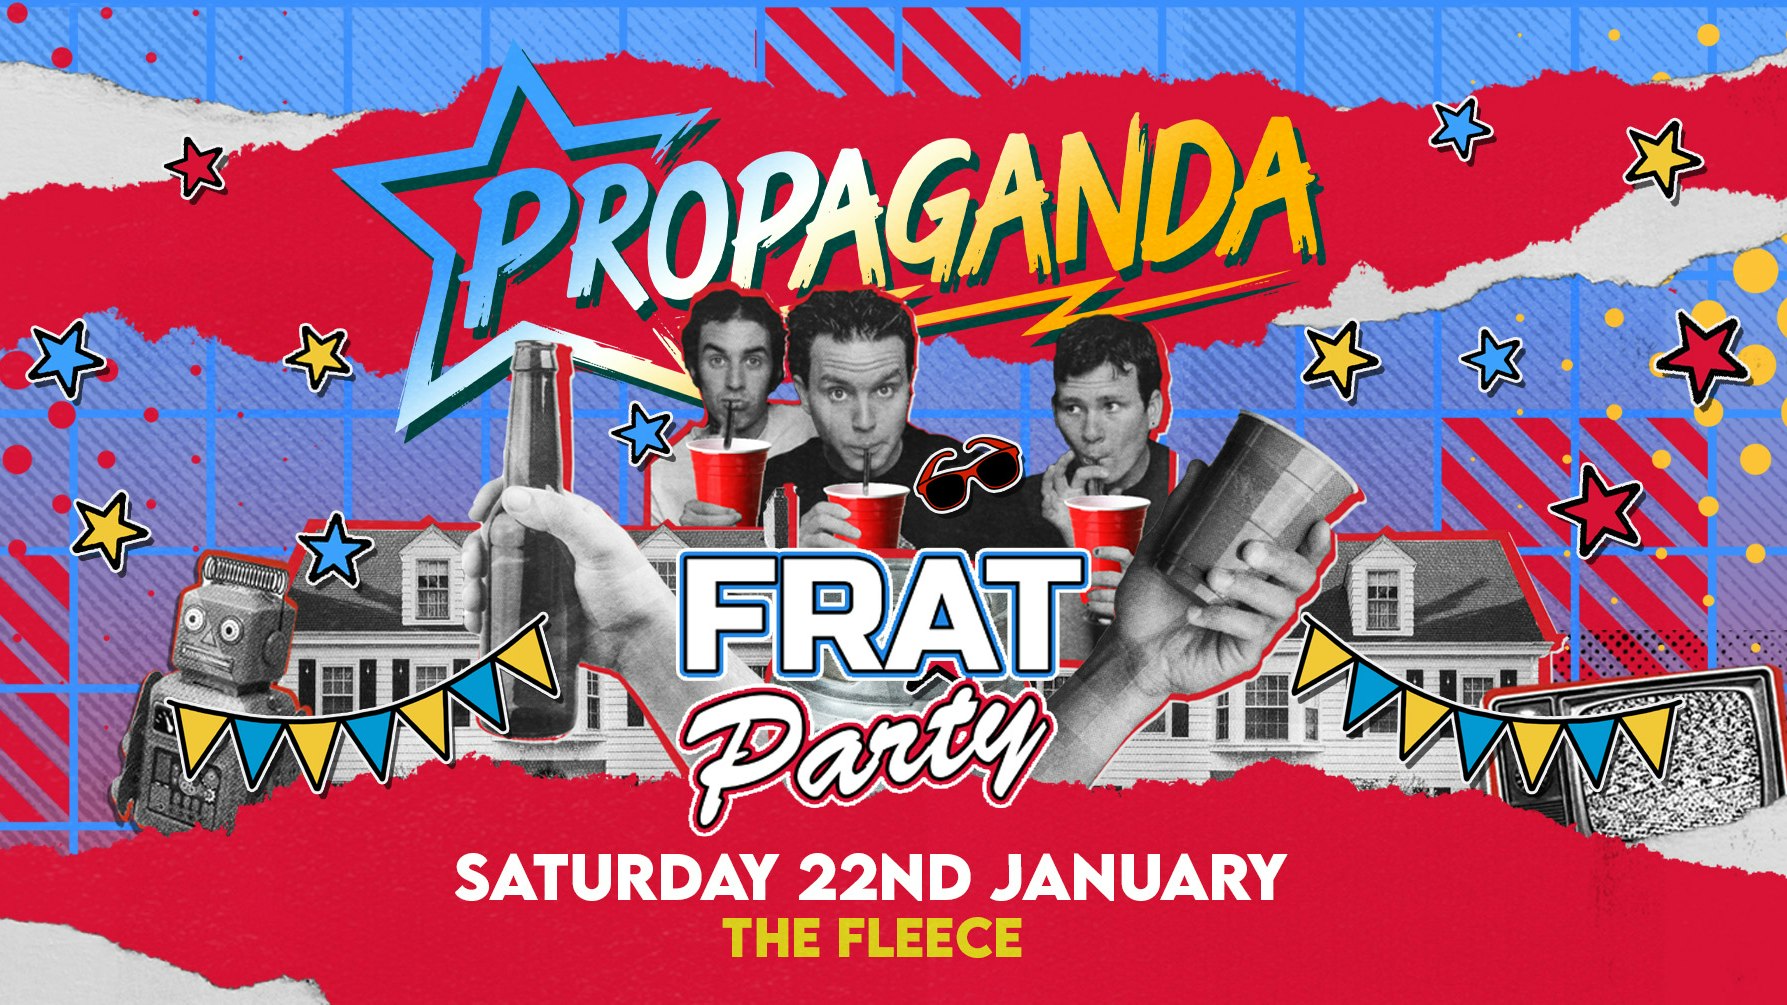 Propaganda Bristol – Frat Party!